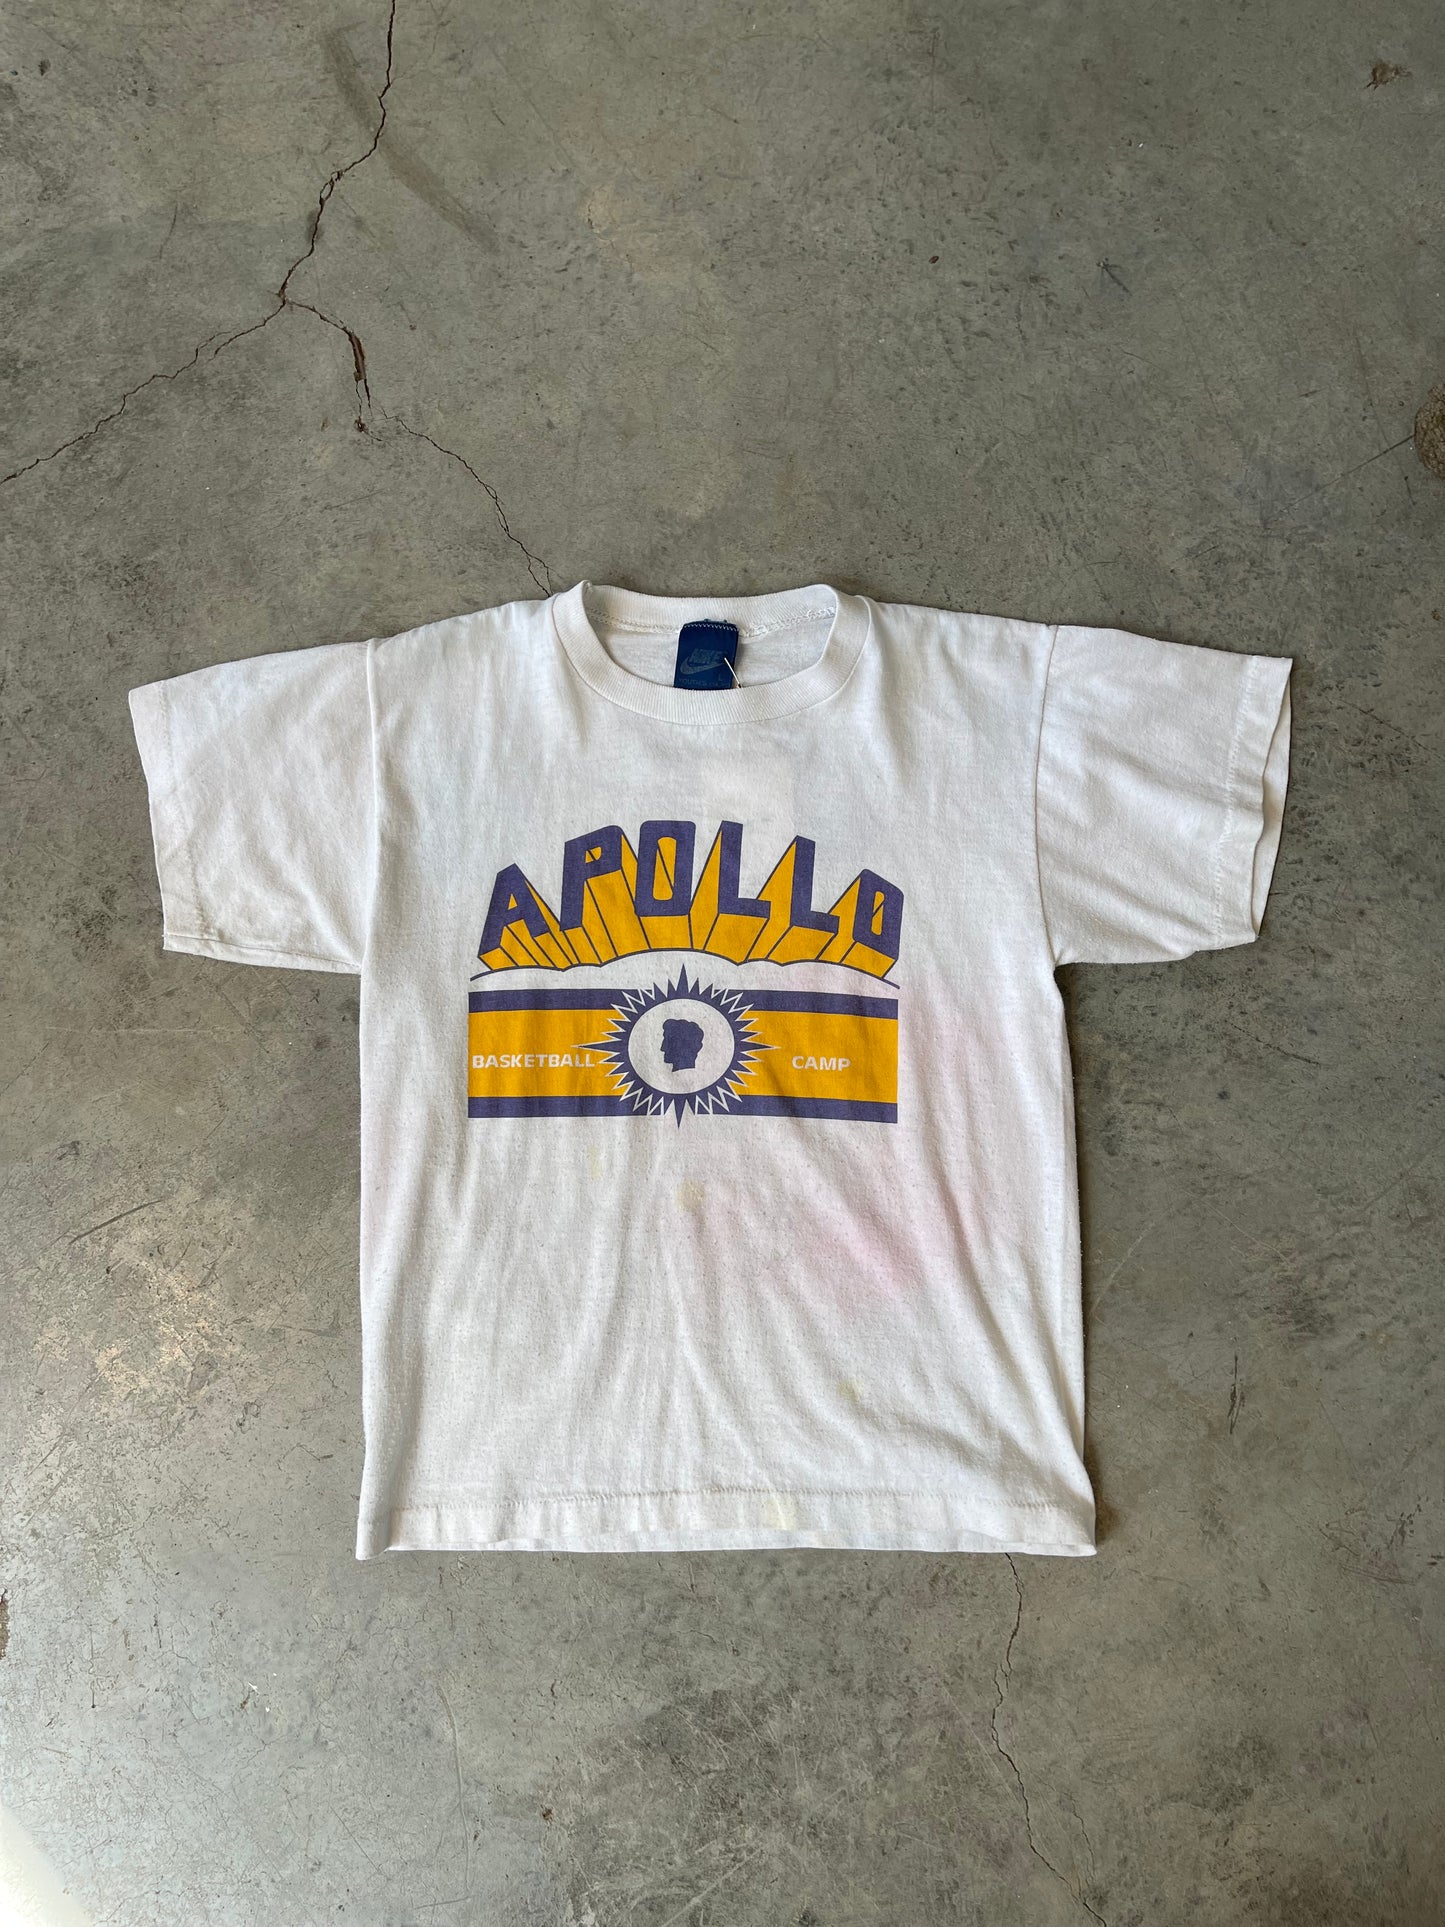 Vintage Nike Apollo Basketball Camp—WMNS XS/S